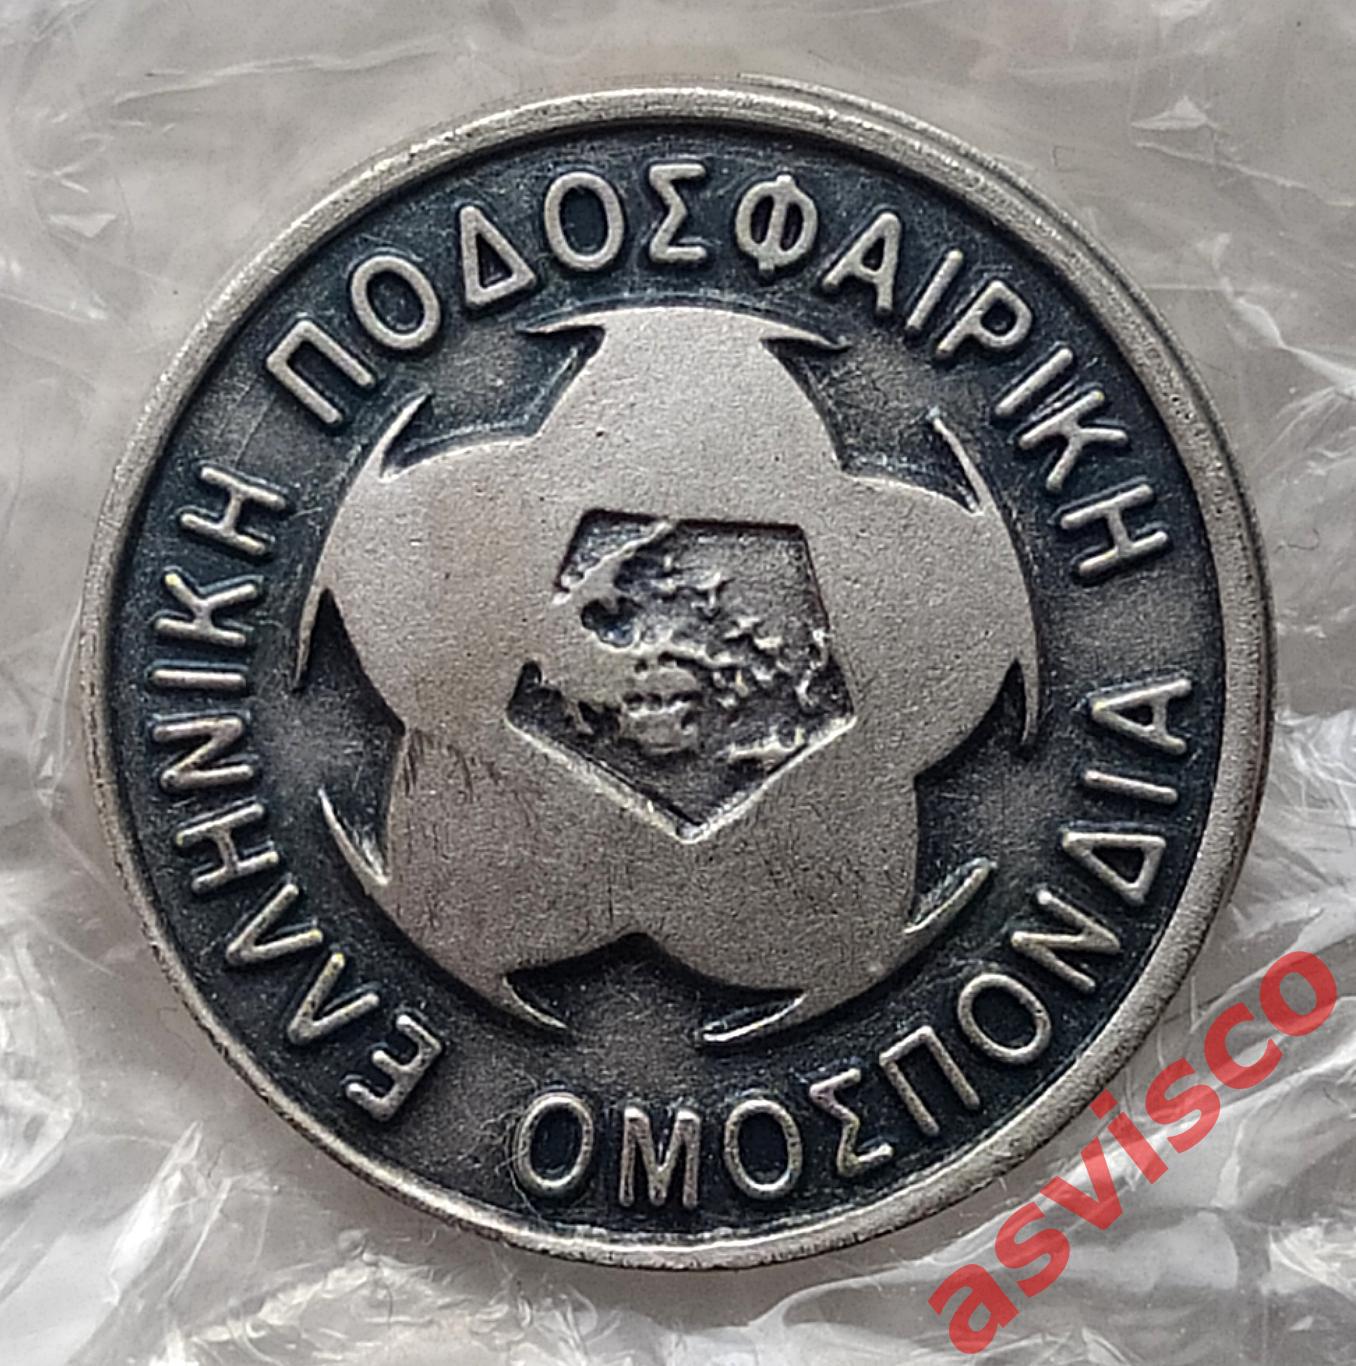 Значок Греческая федерация футбола.